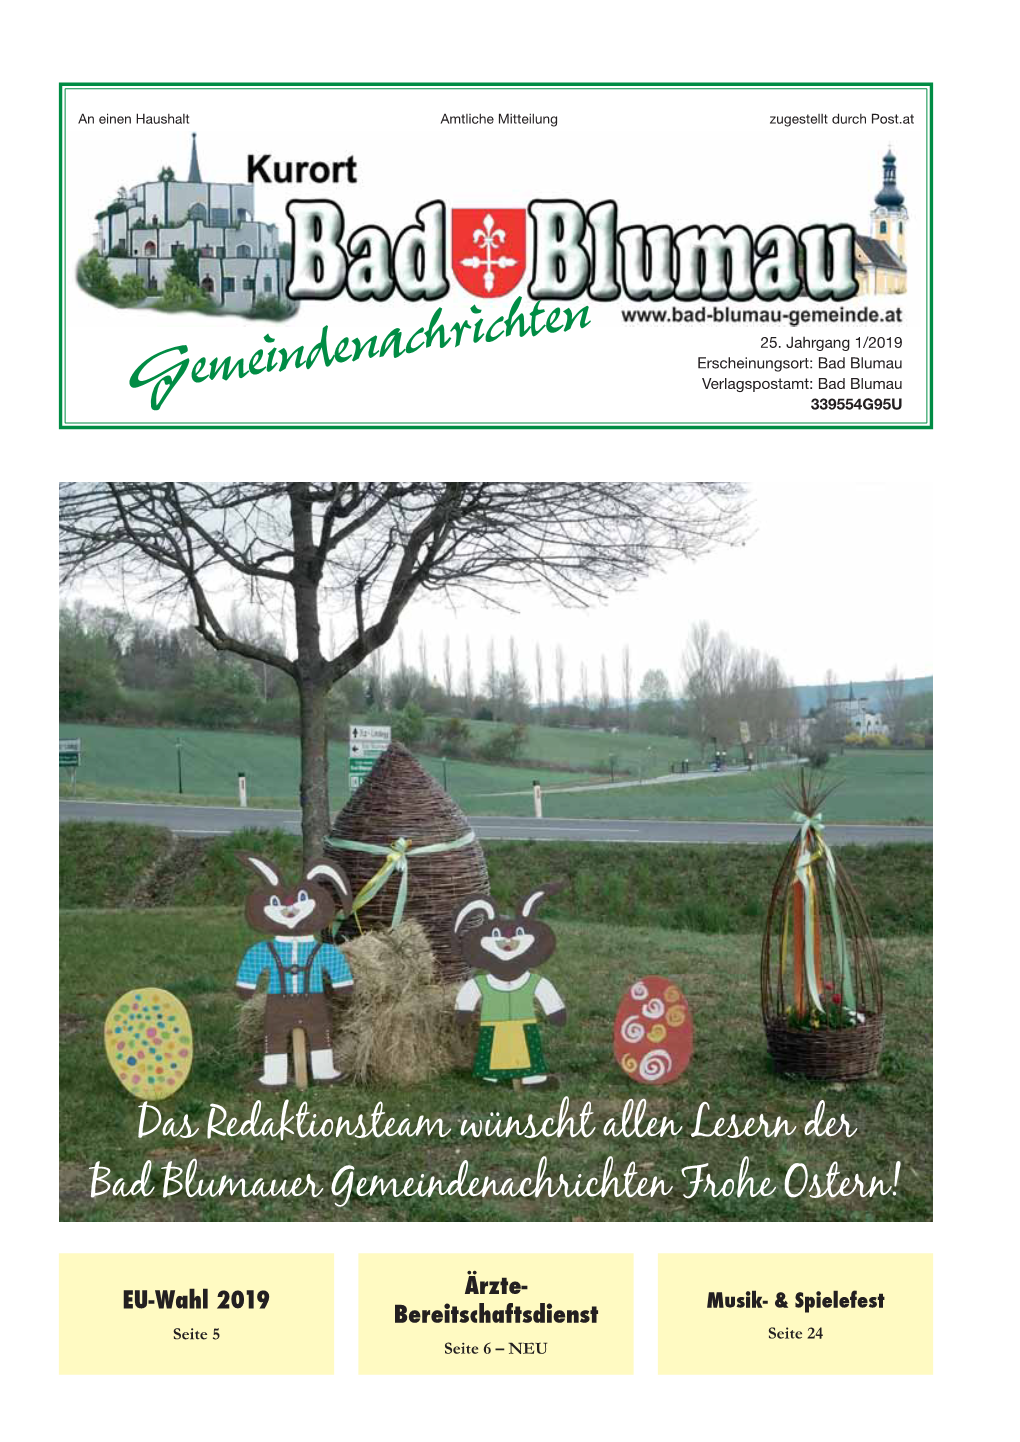 Das Redaktionsteam Wünscht Allen Lesern Der Bad Blumauer Gemeindenachrichten Frohe Ostern!